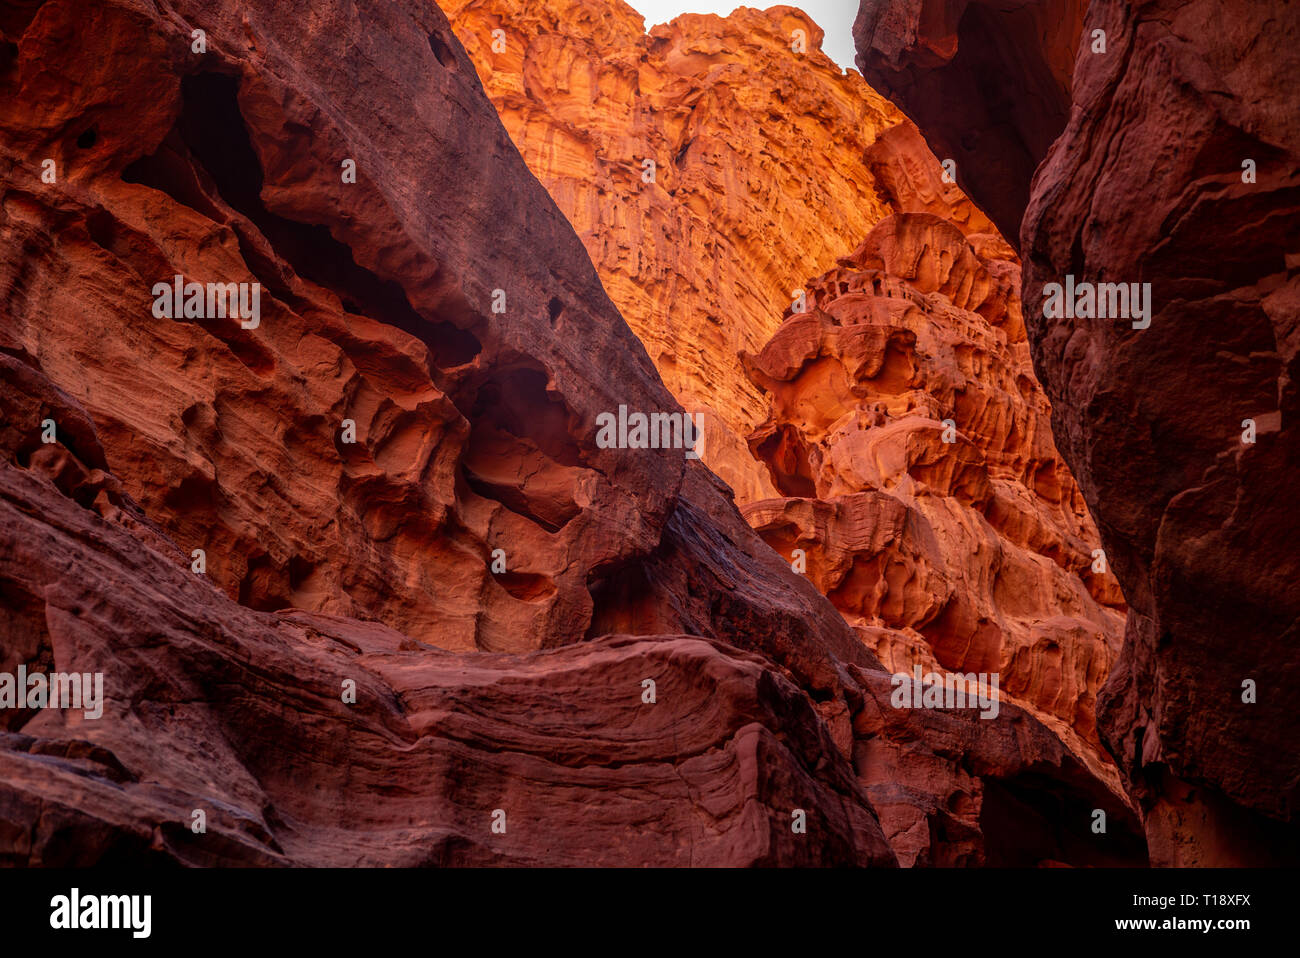 Red rocks in cave of Wadi Rum desert, Jordan Stock Photo